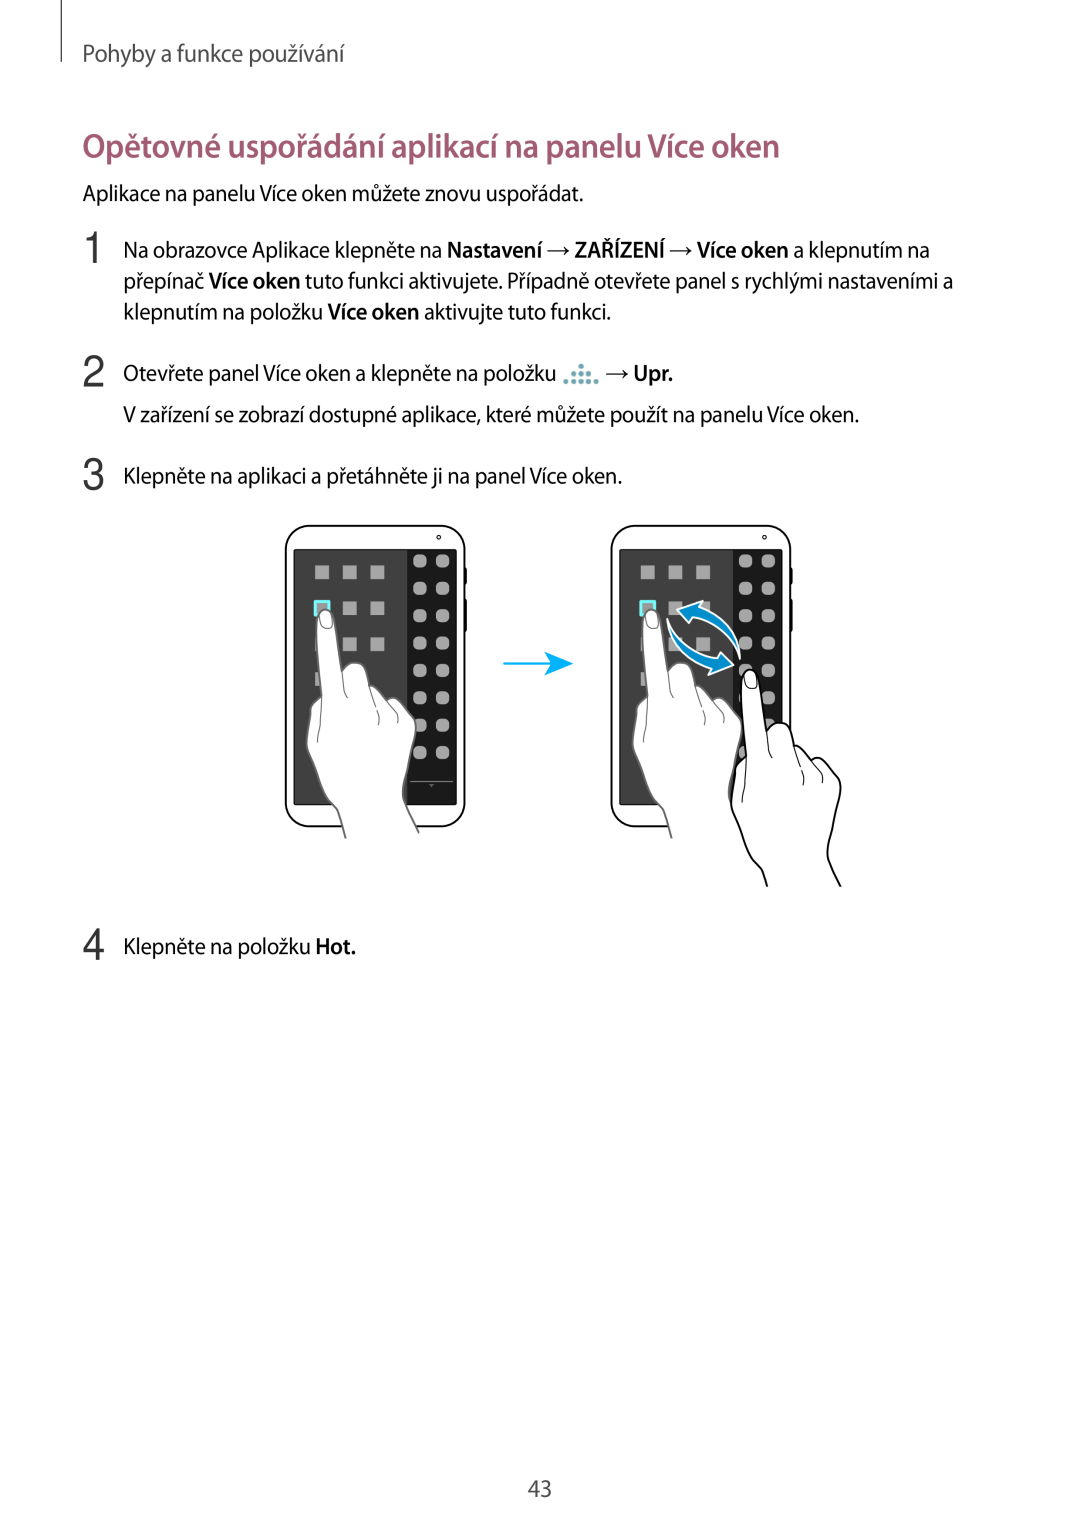 Samsung SM-T700NZWAEUR, SM-T700NZWAXEO manual Opětovné uspořádání aplikací na panelu Více oken, Pohyby a funkce používání 